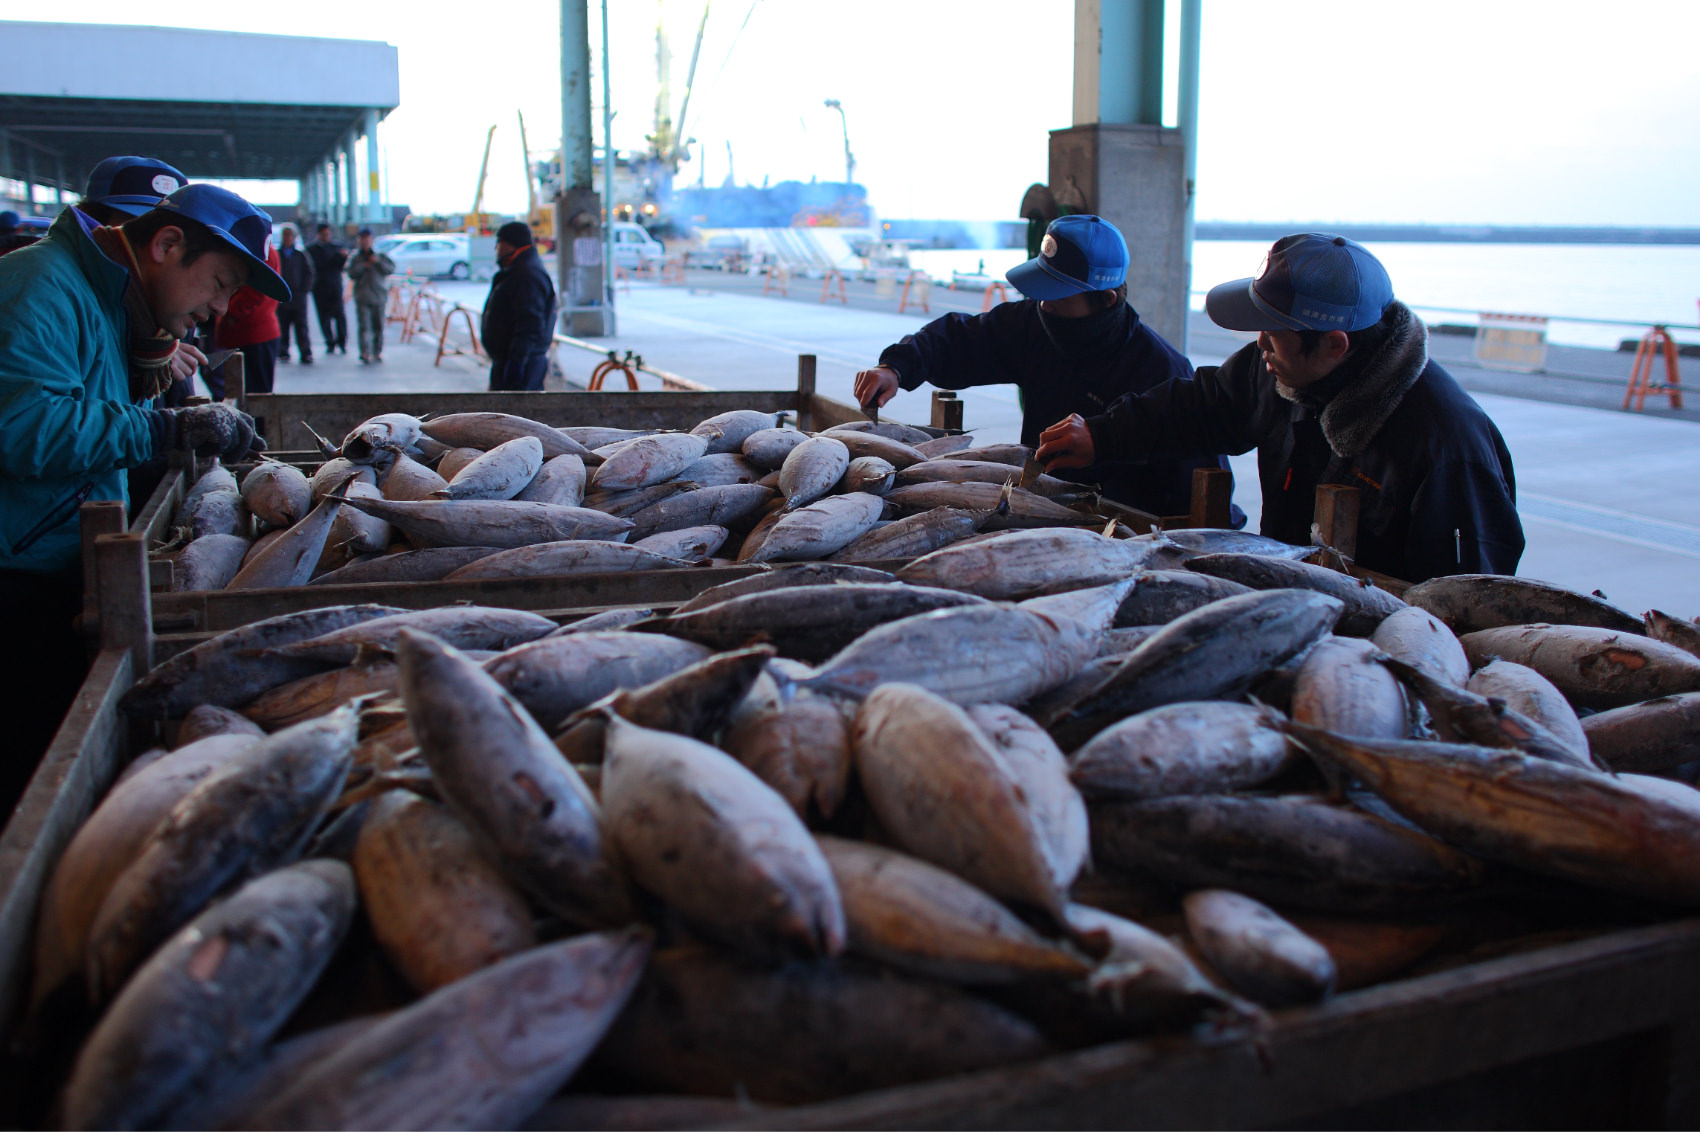 カツオの漁業量とかつお類の生産および消費量 株式会社にんべん